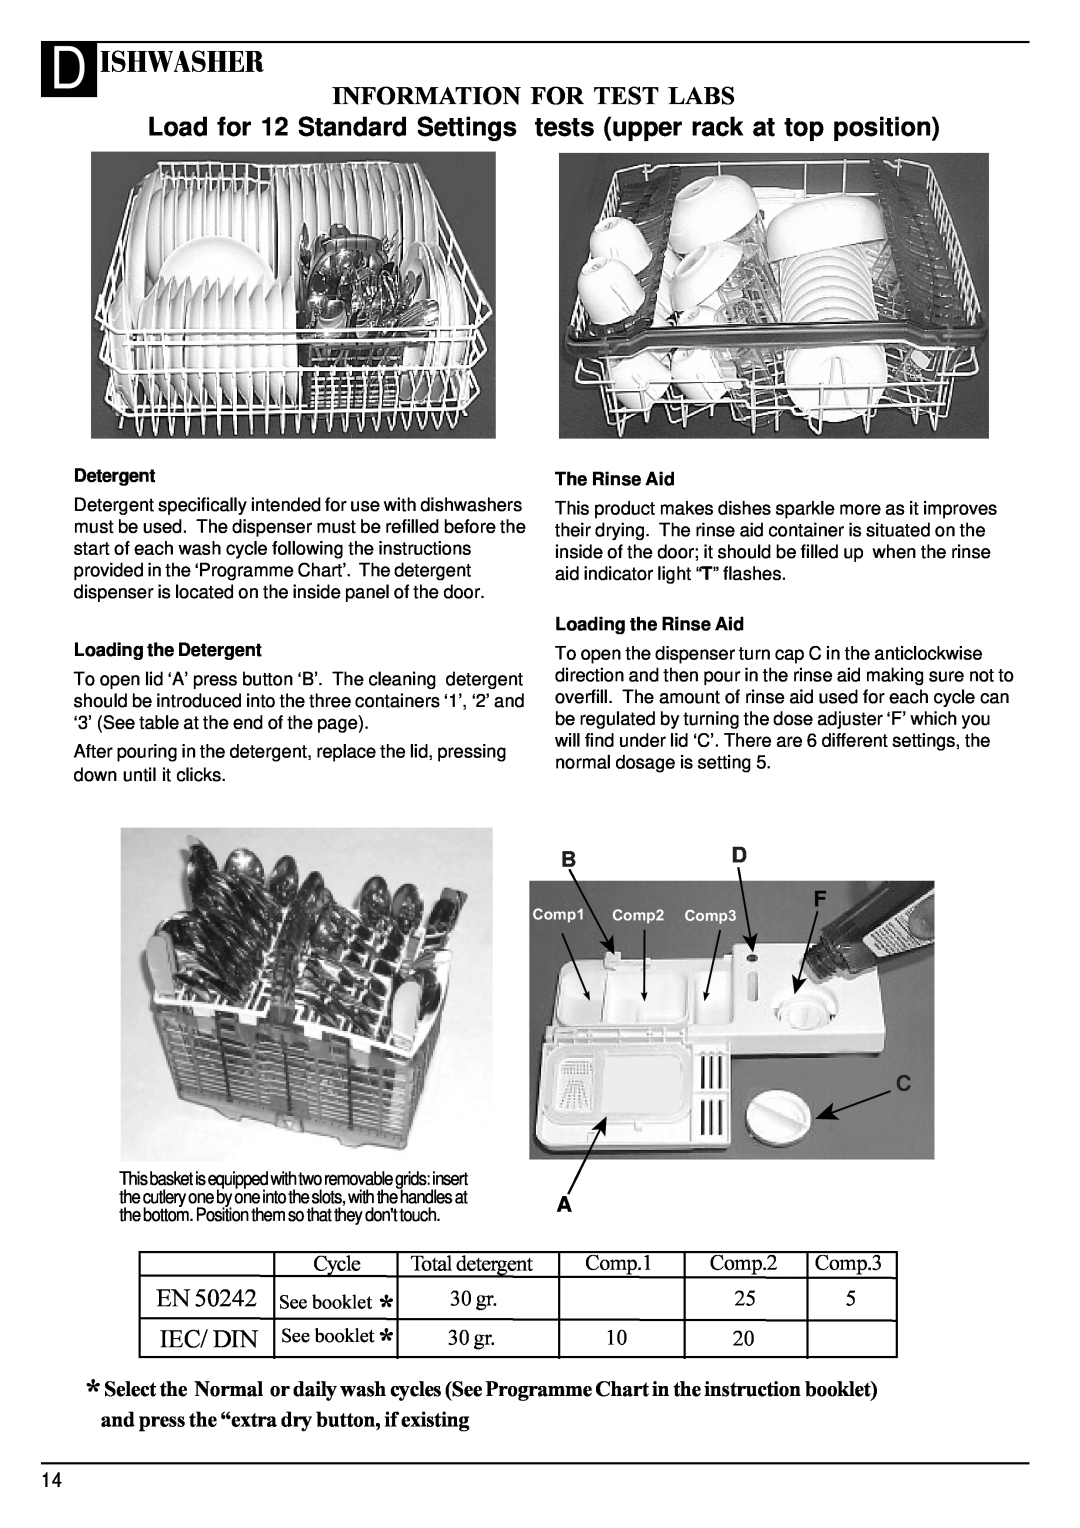 Hotpoint BFV68 D Ishwasher, Information For Test Labs, Iec/ Din, Bd F, Total detergent 30gr 30 gr, Comp.1, Comp.2 25 20 